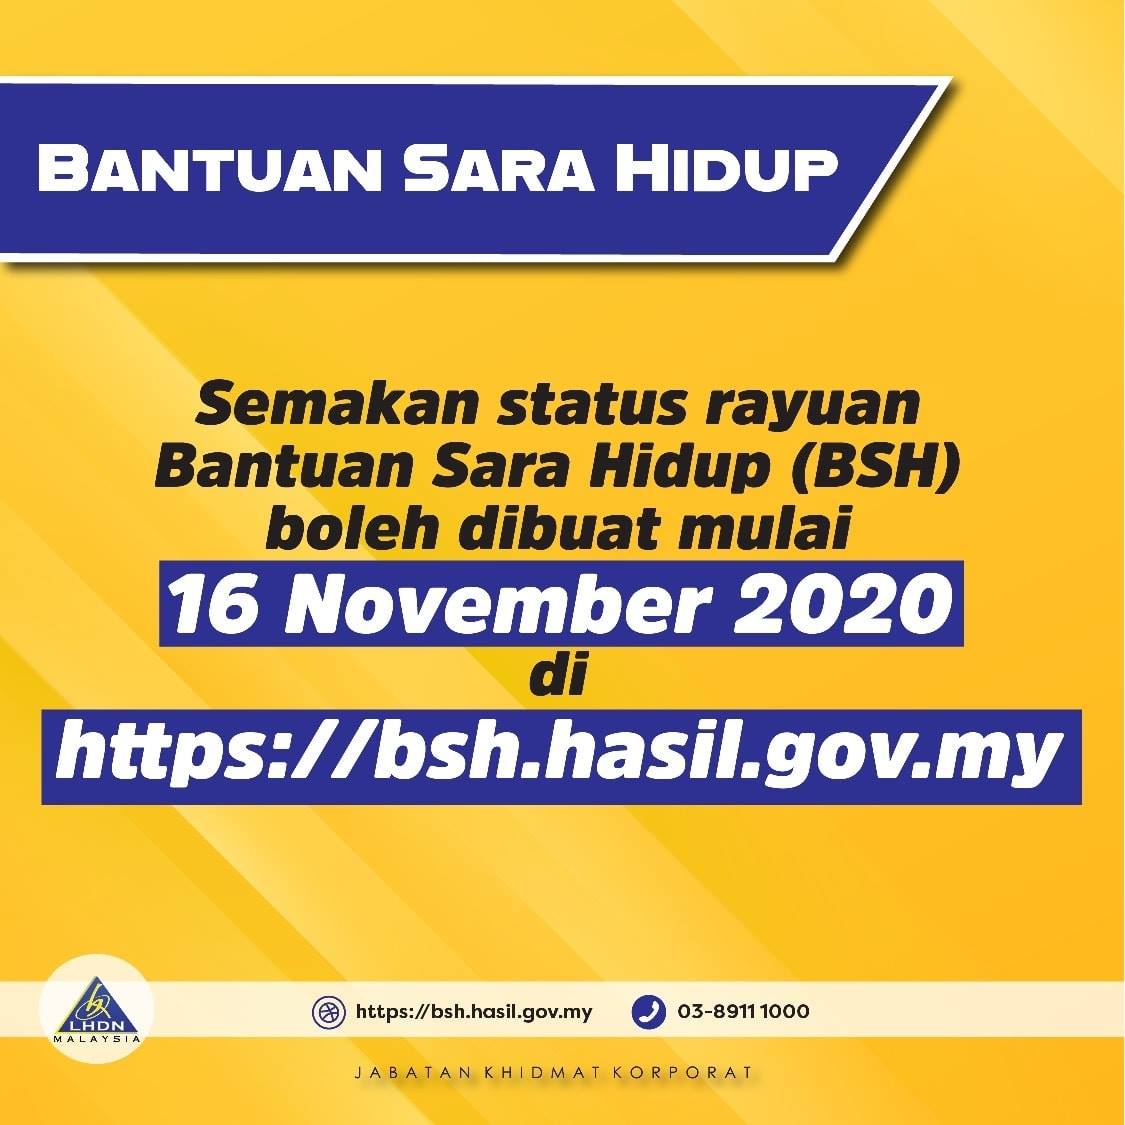 Tarikh Semakan Status Rayuan BSH 2020 2